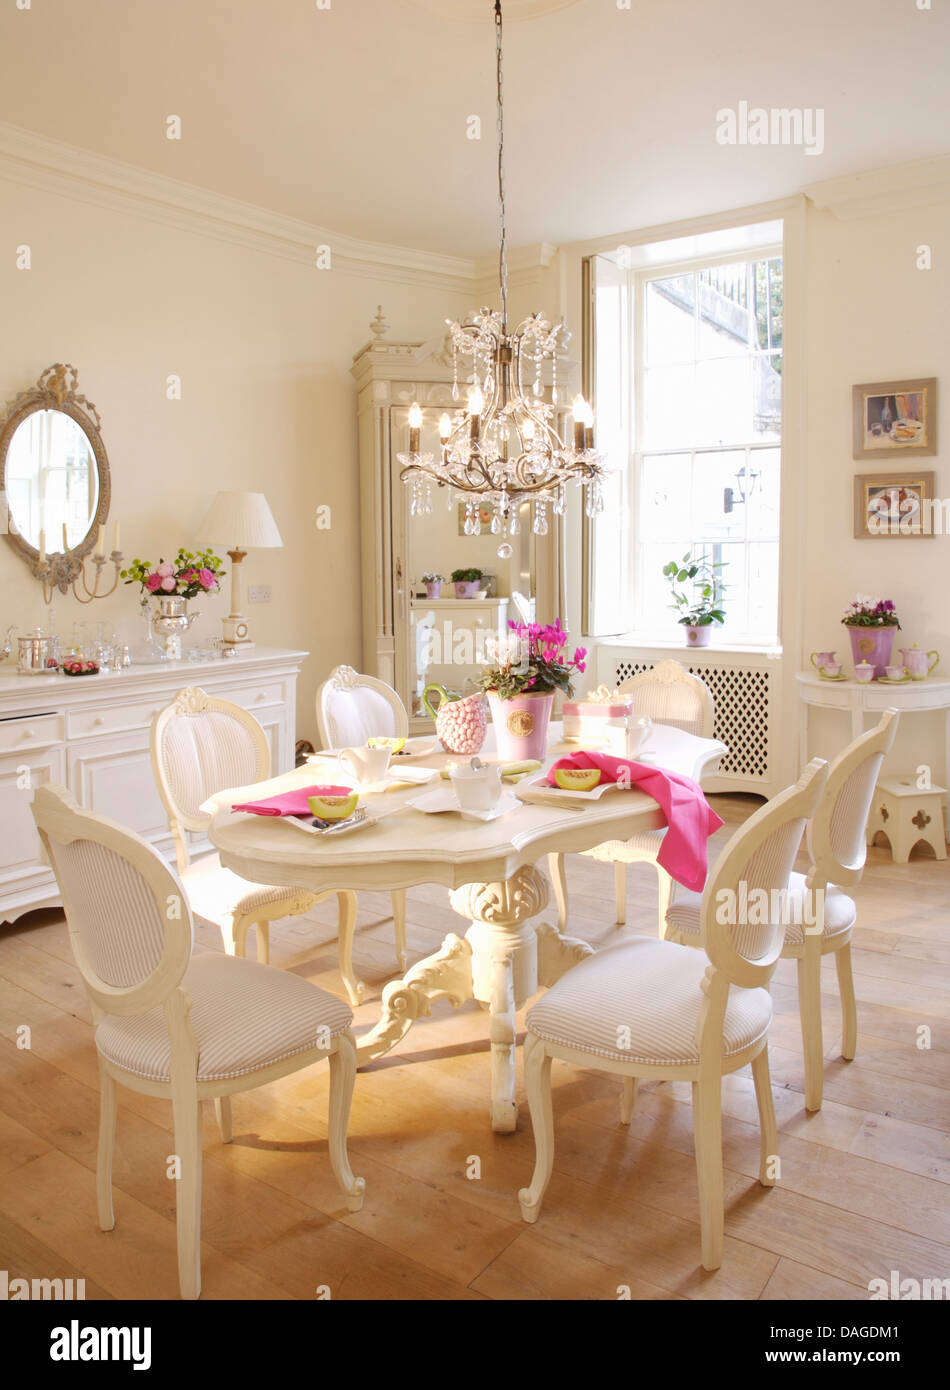 Chaises de style français blancs et peints en blanc table ovale de style gustavien en salle à manger avec plancher en bois et verre lustre Banque D'Images